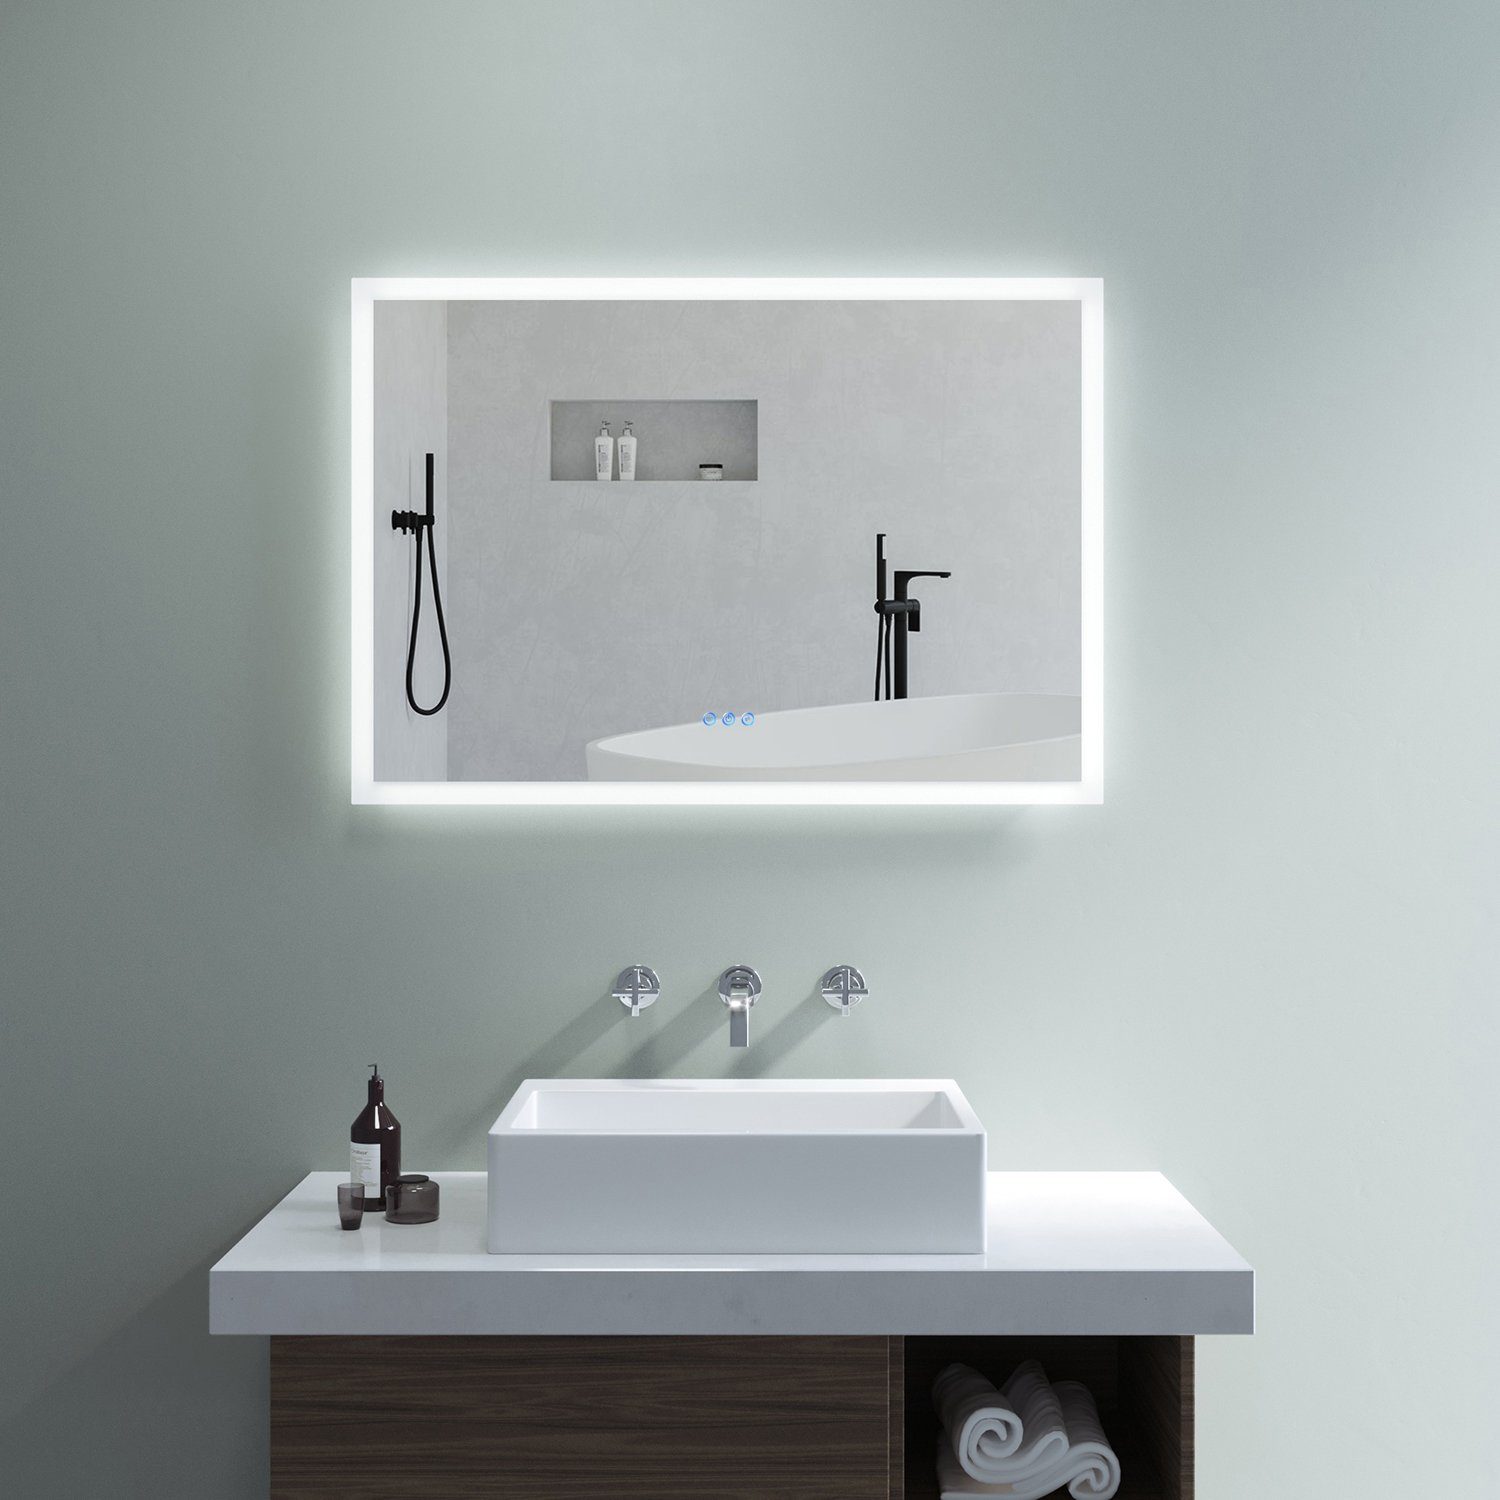 AQUALAVOS Badspiegel Badezimmerspiegel mit LED Beleuchtung Touch Beschlagfrei Wandspiegel, 100x70 cm, mit 6400K Kaltweiß & Warmweiß 3000K Beleuchtung